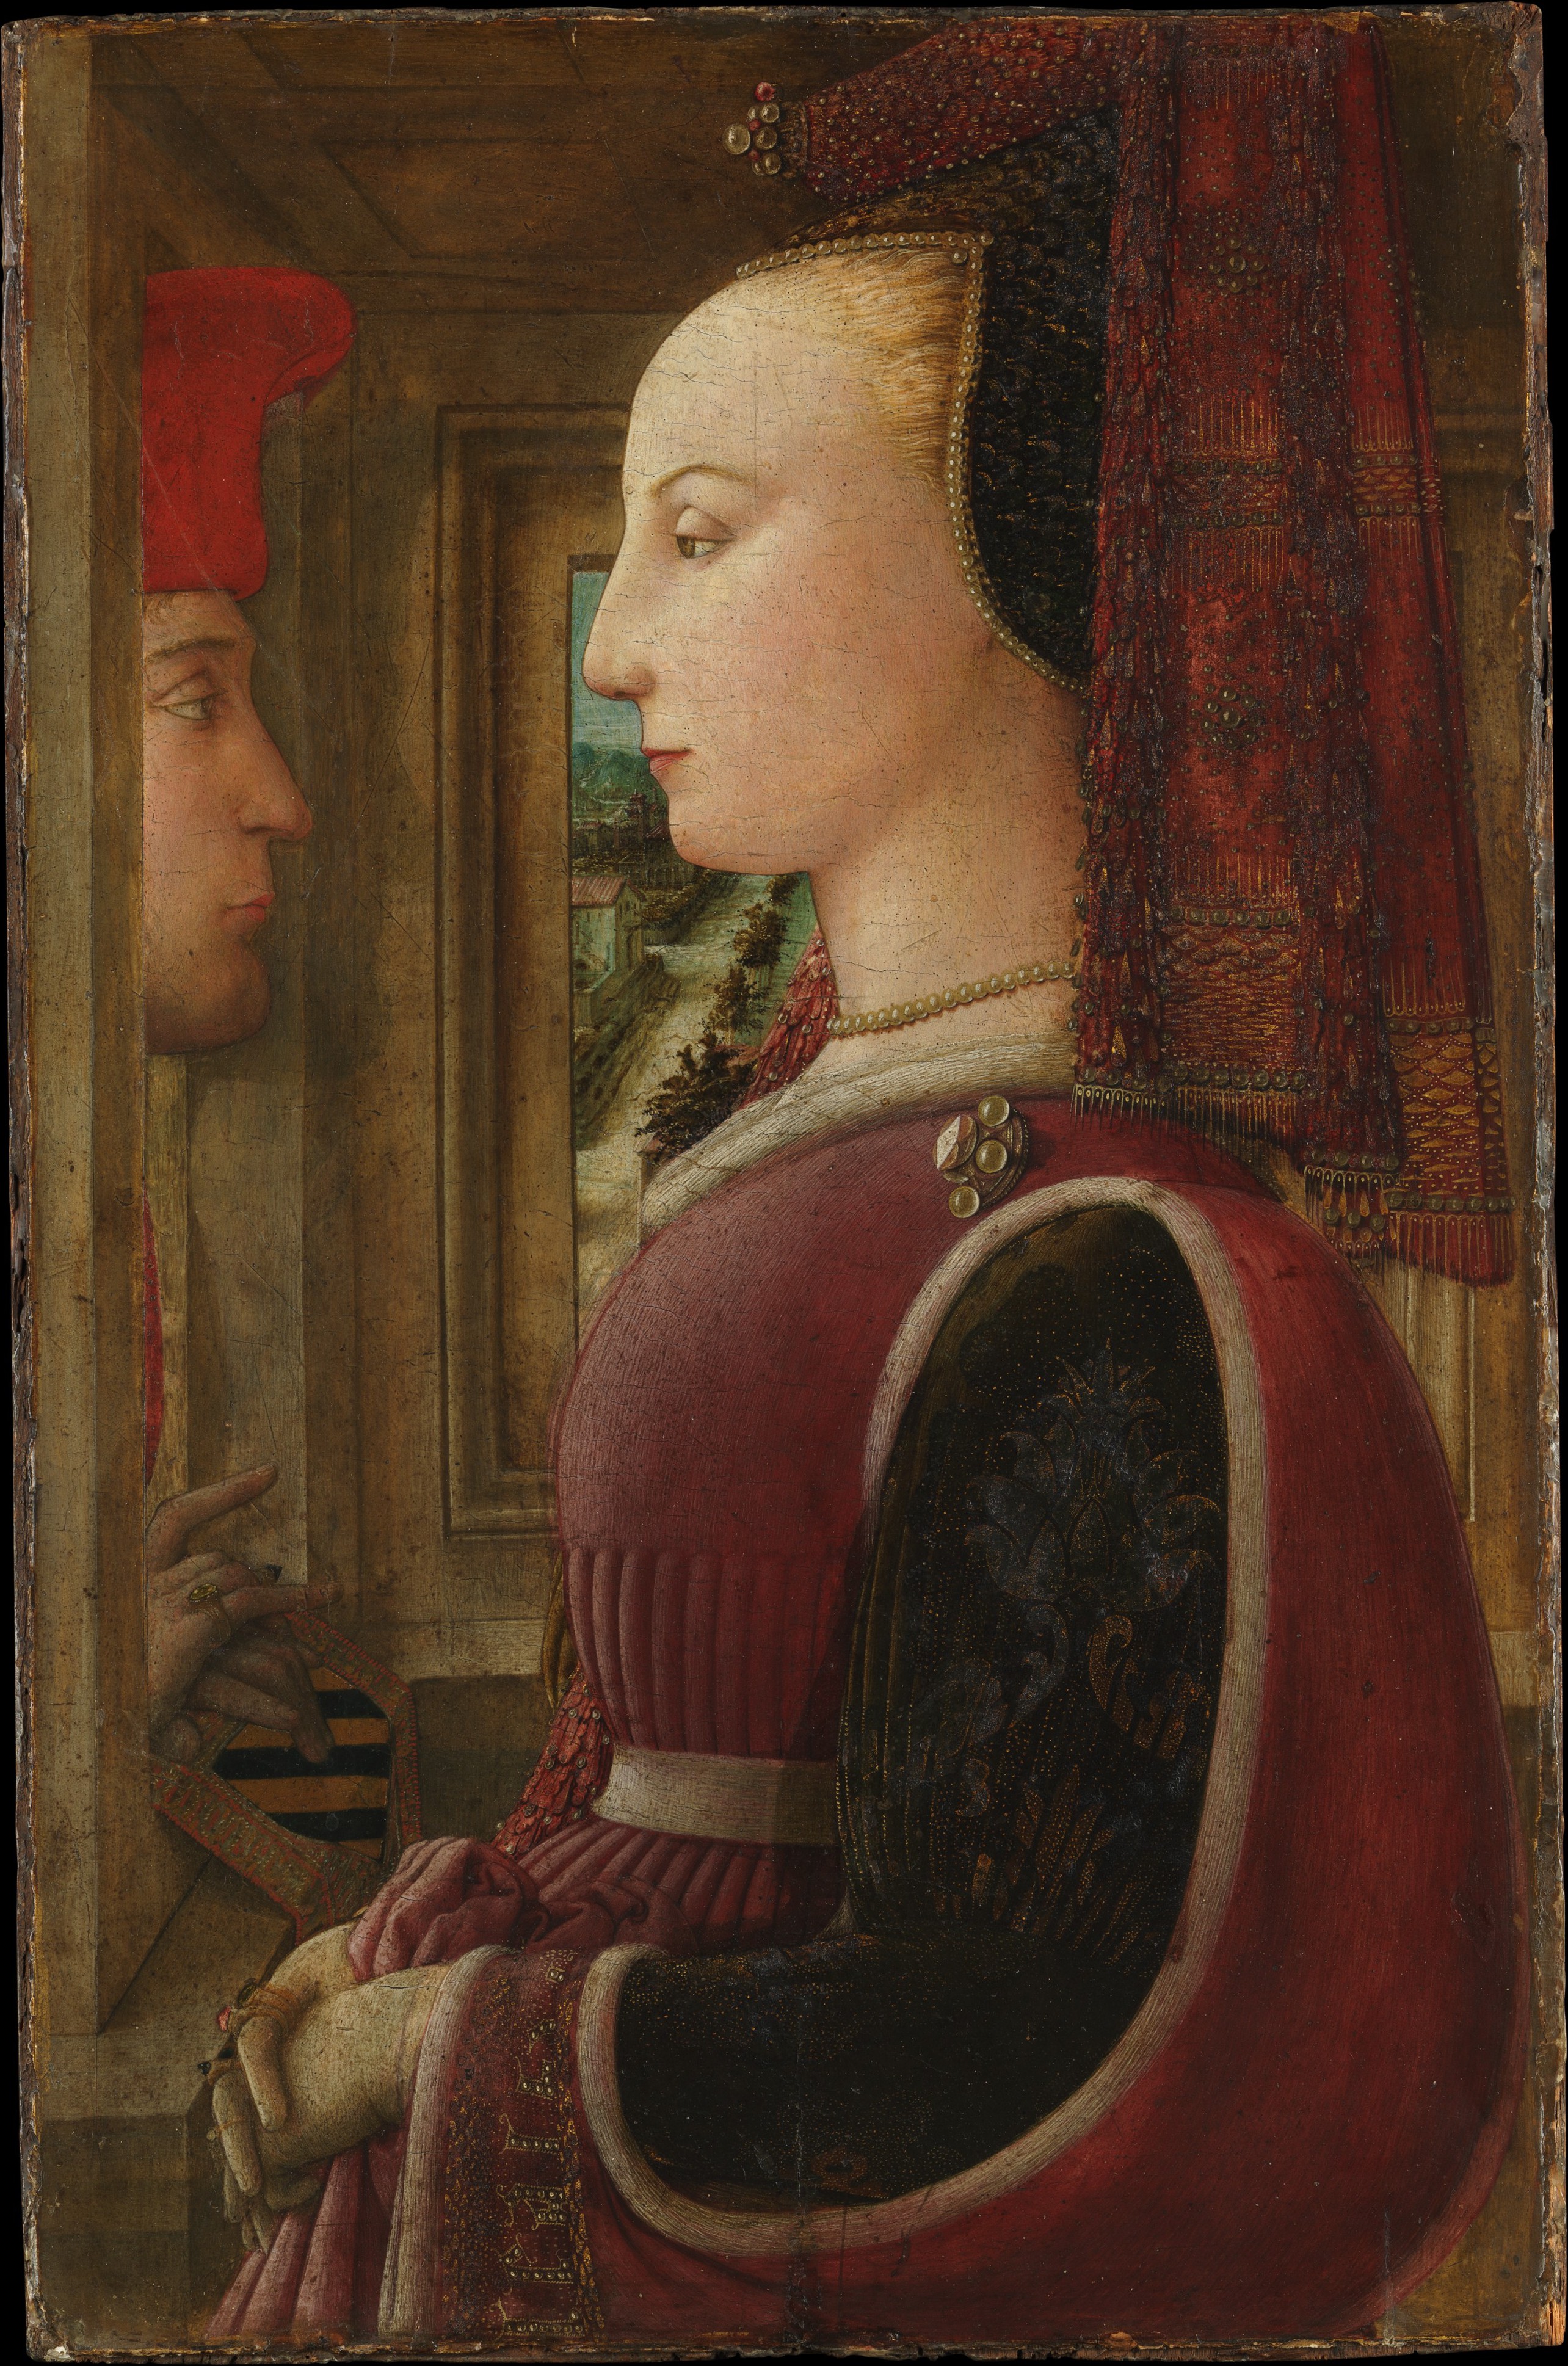 女子與窗扉邊的男子肖像 by Fra Filippo Lippi - 約 1440 年 - 64.1 x 41.9 釐米 